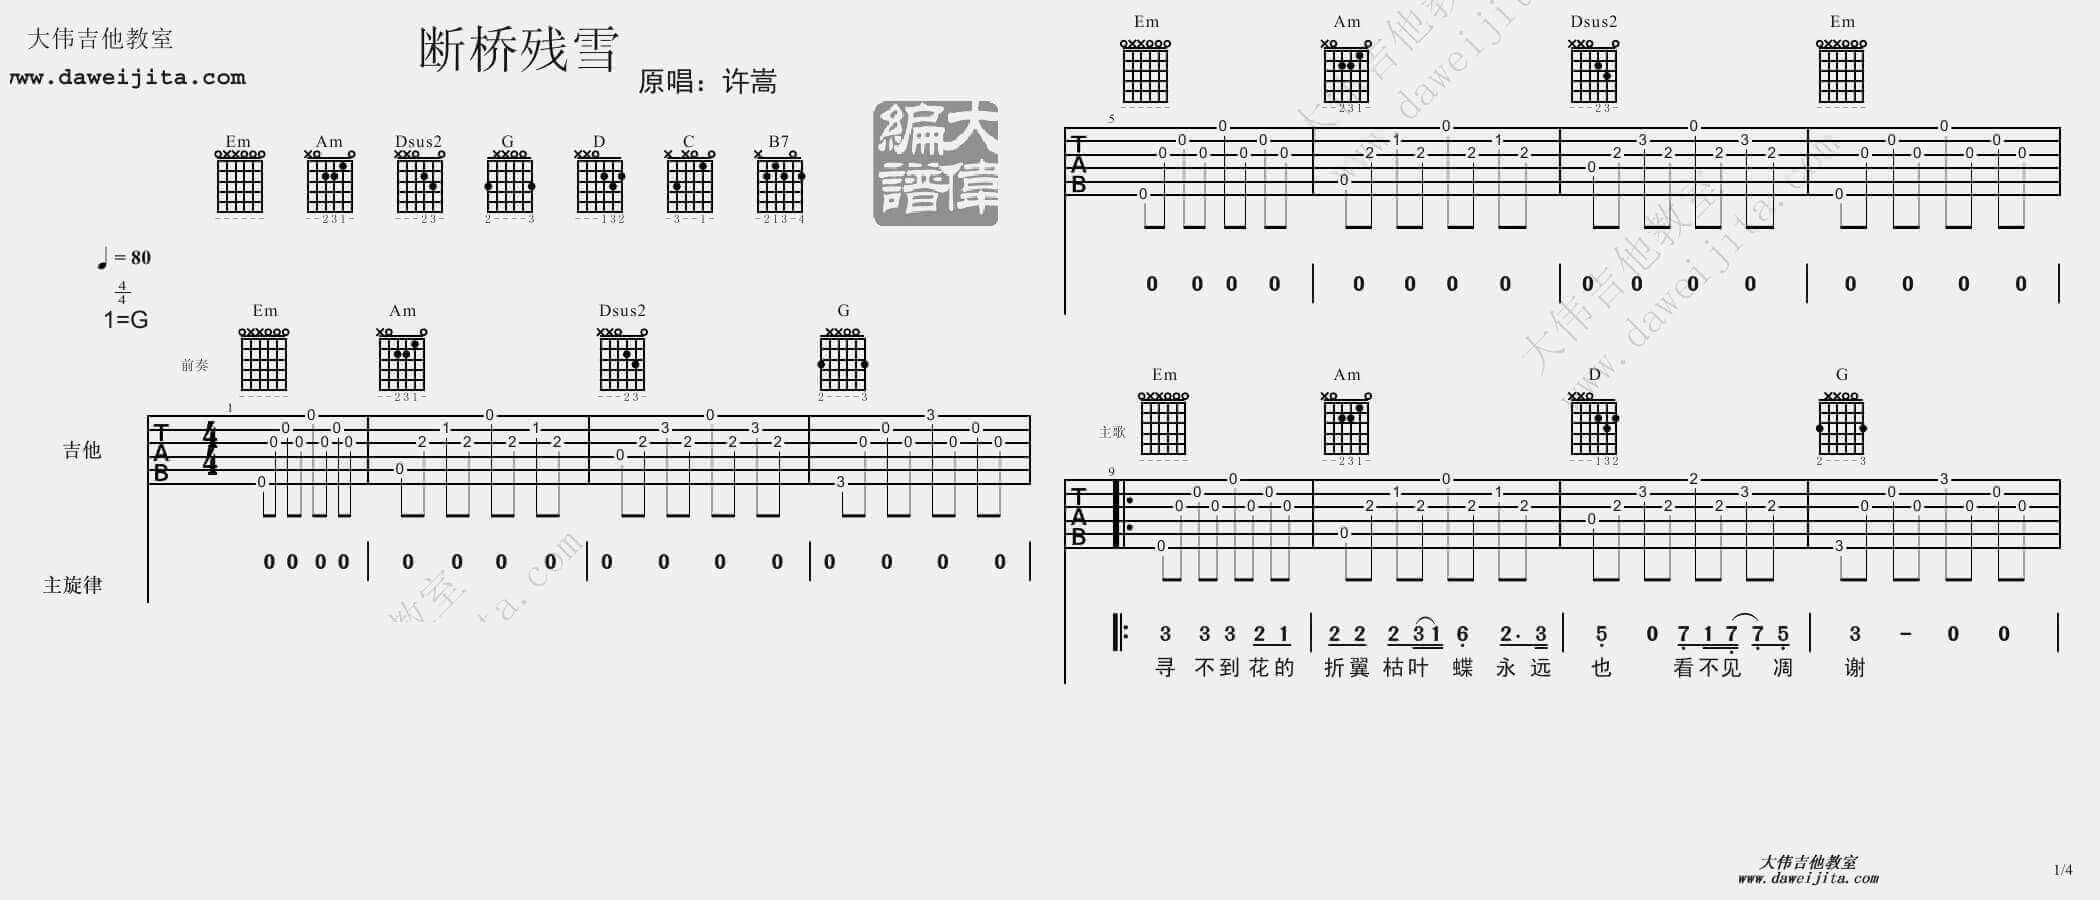 许嵩《断桥残雪》吉他谱 许嵩-彼岸吉他 - 一站式吉他爱好者服务平台